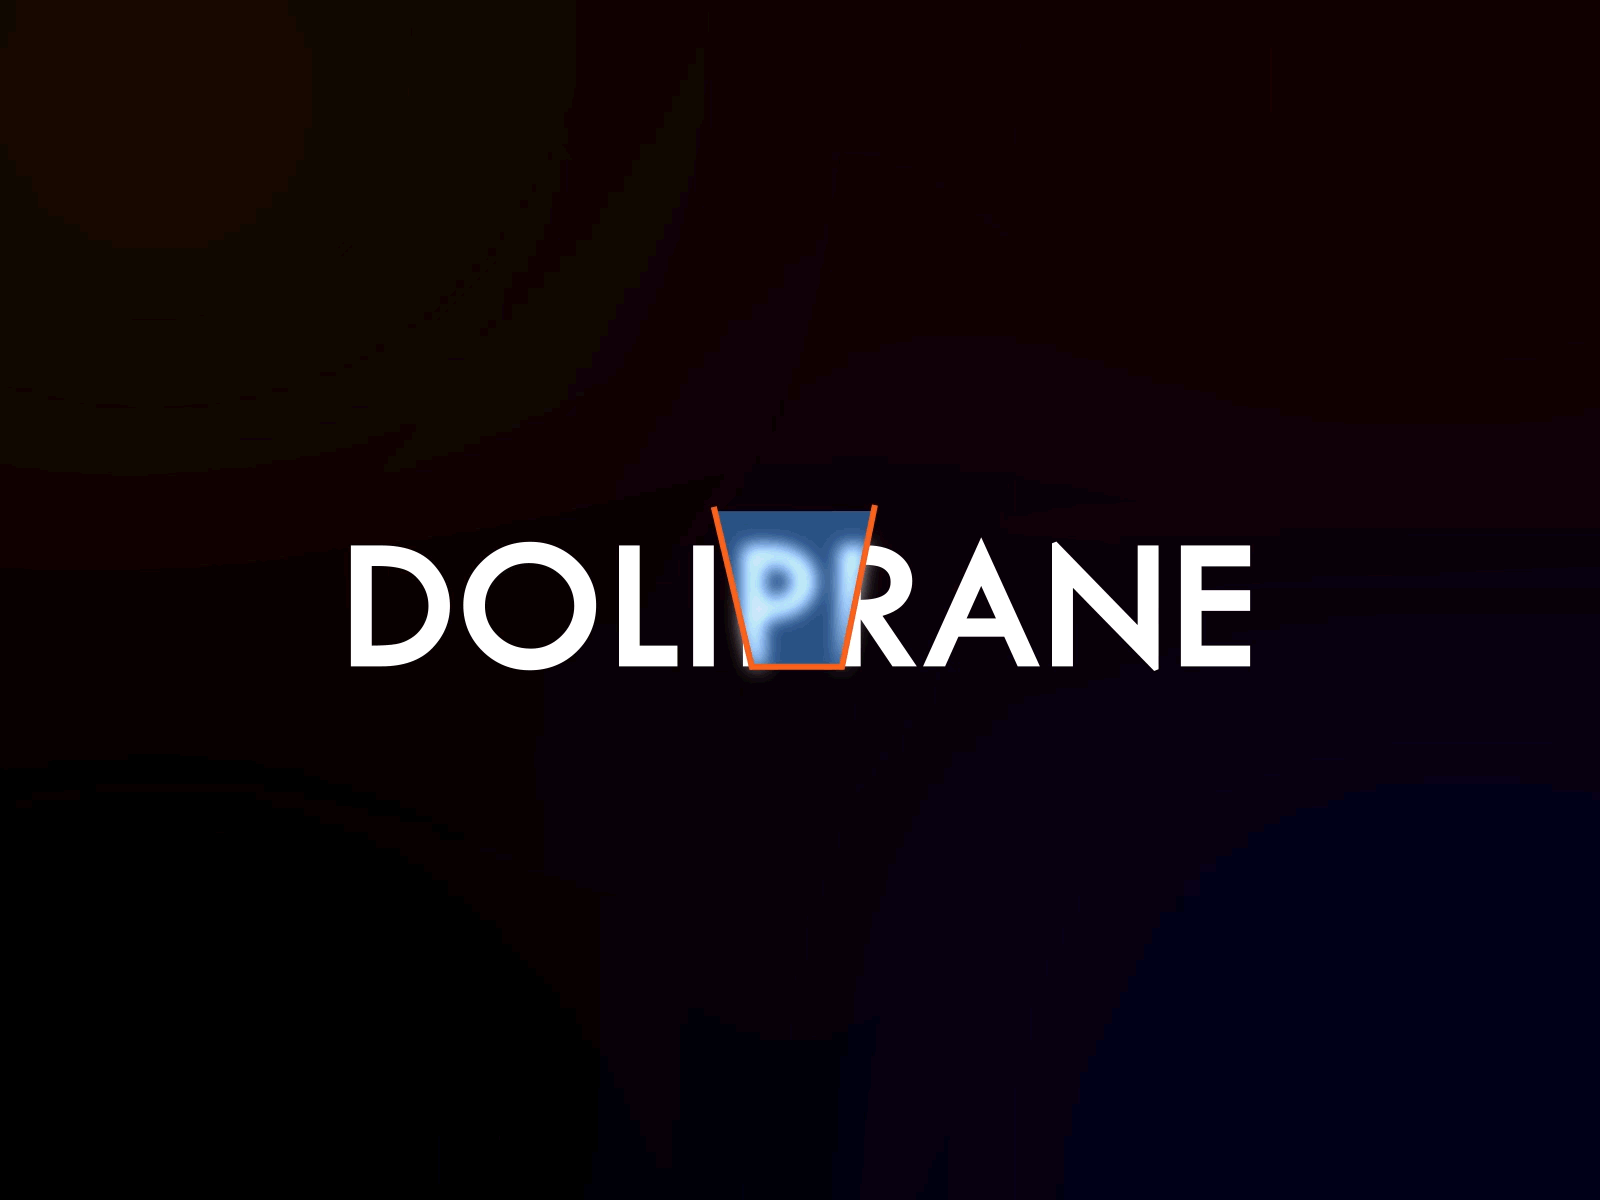 DOLIPRANE - Animation 3d animation animated animated logo animatedgif animation design logoanimated motion motion design motiongraphics